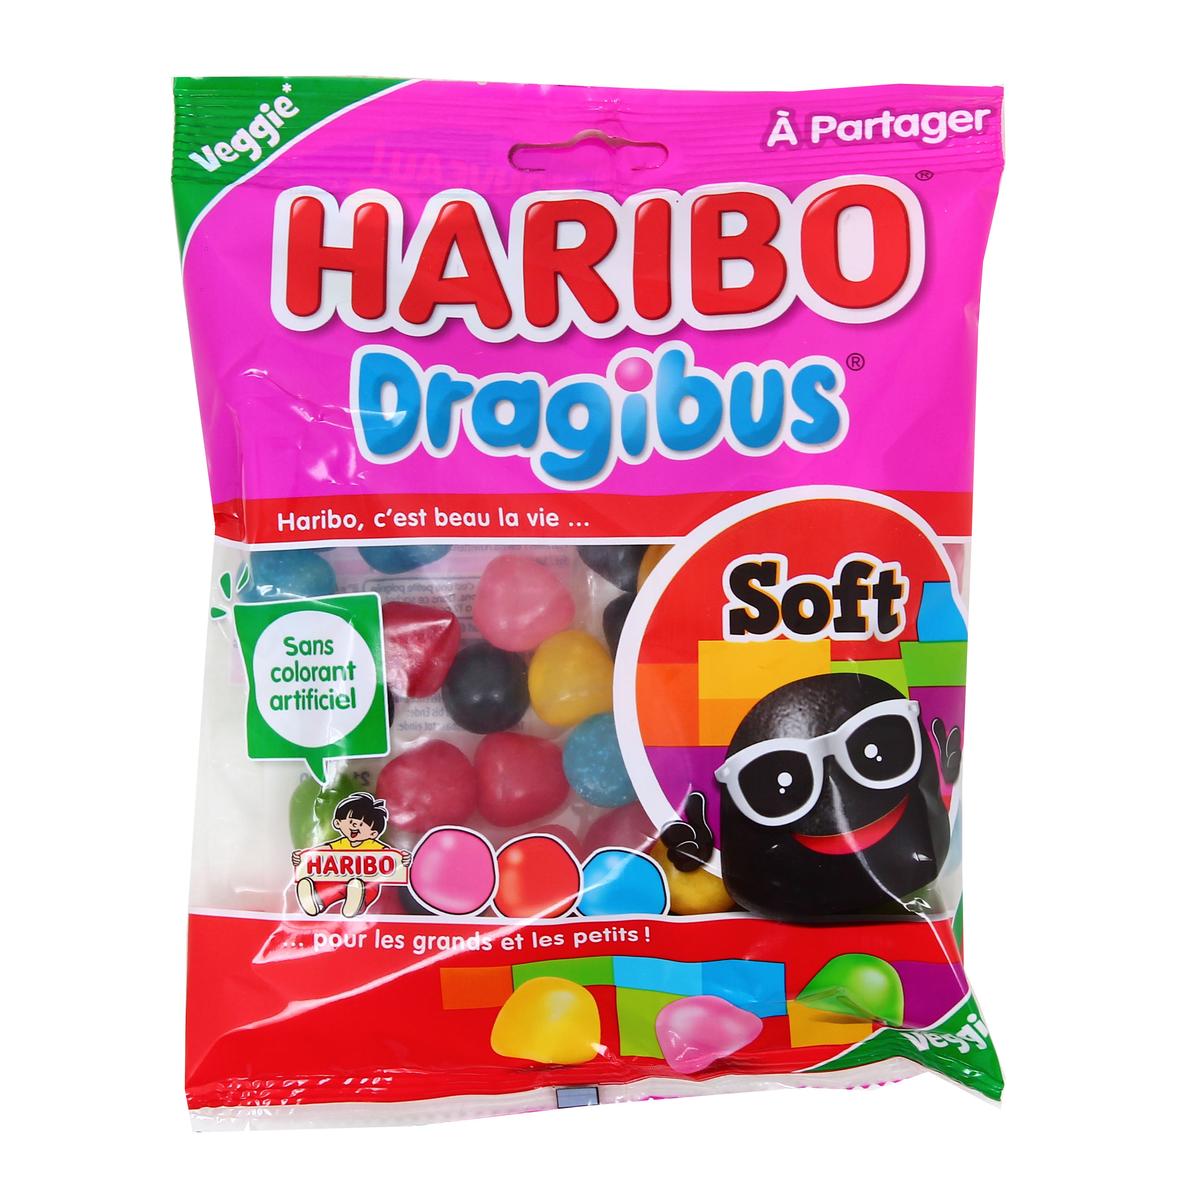 Haribo Bonbons Les Color Schtroumpfs Pik 180g 